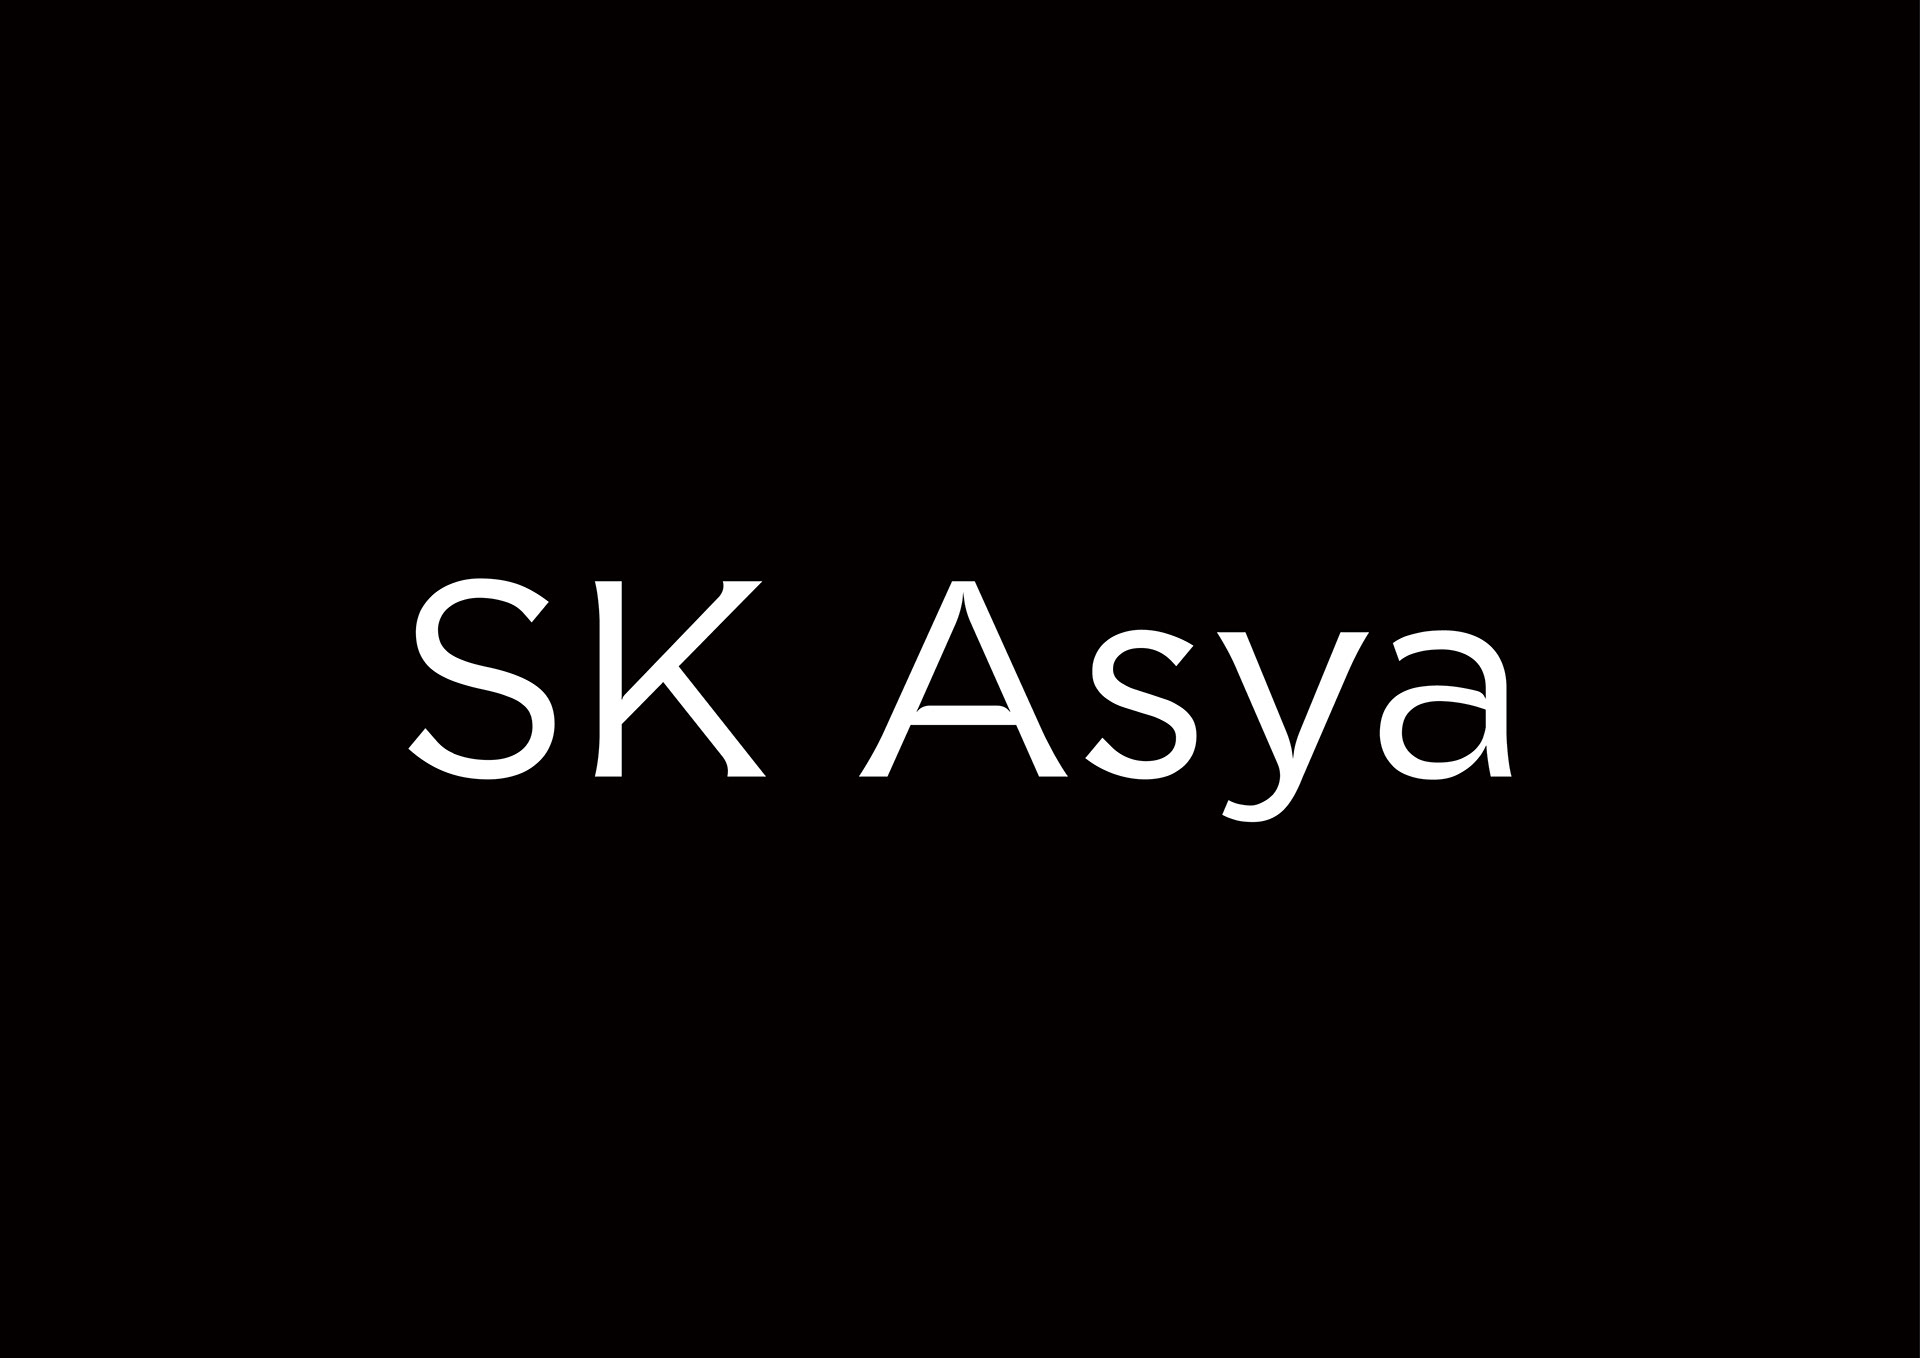 SK-Asya-Typeface.jpg